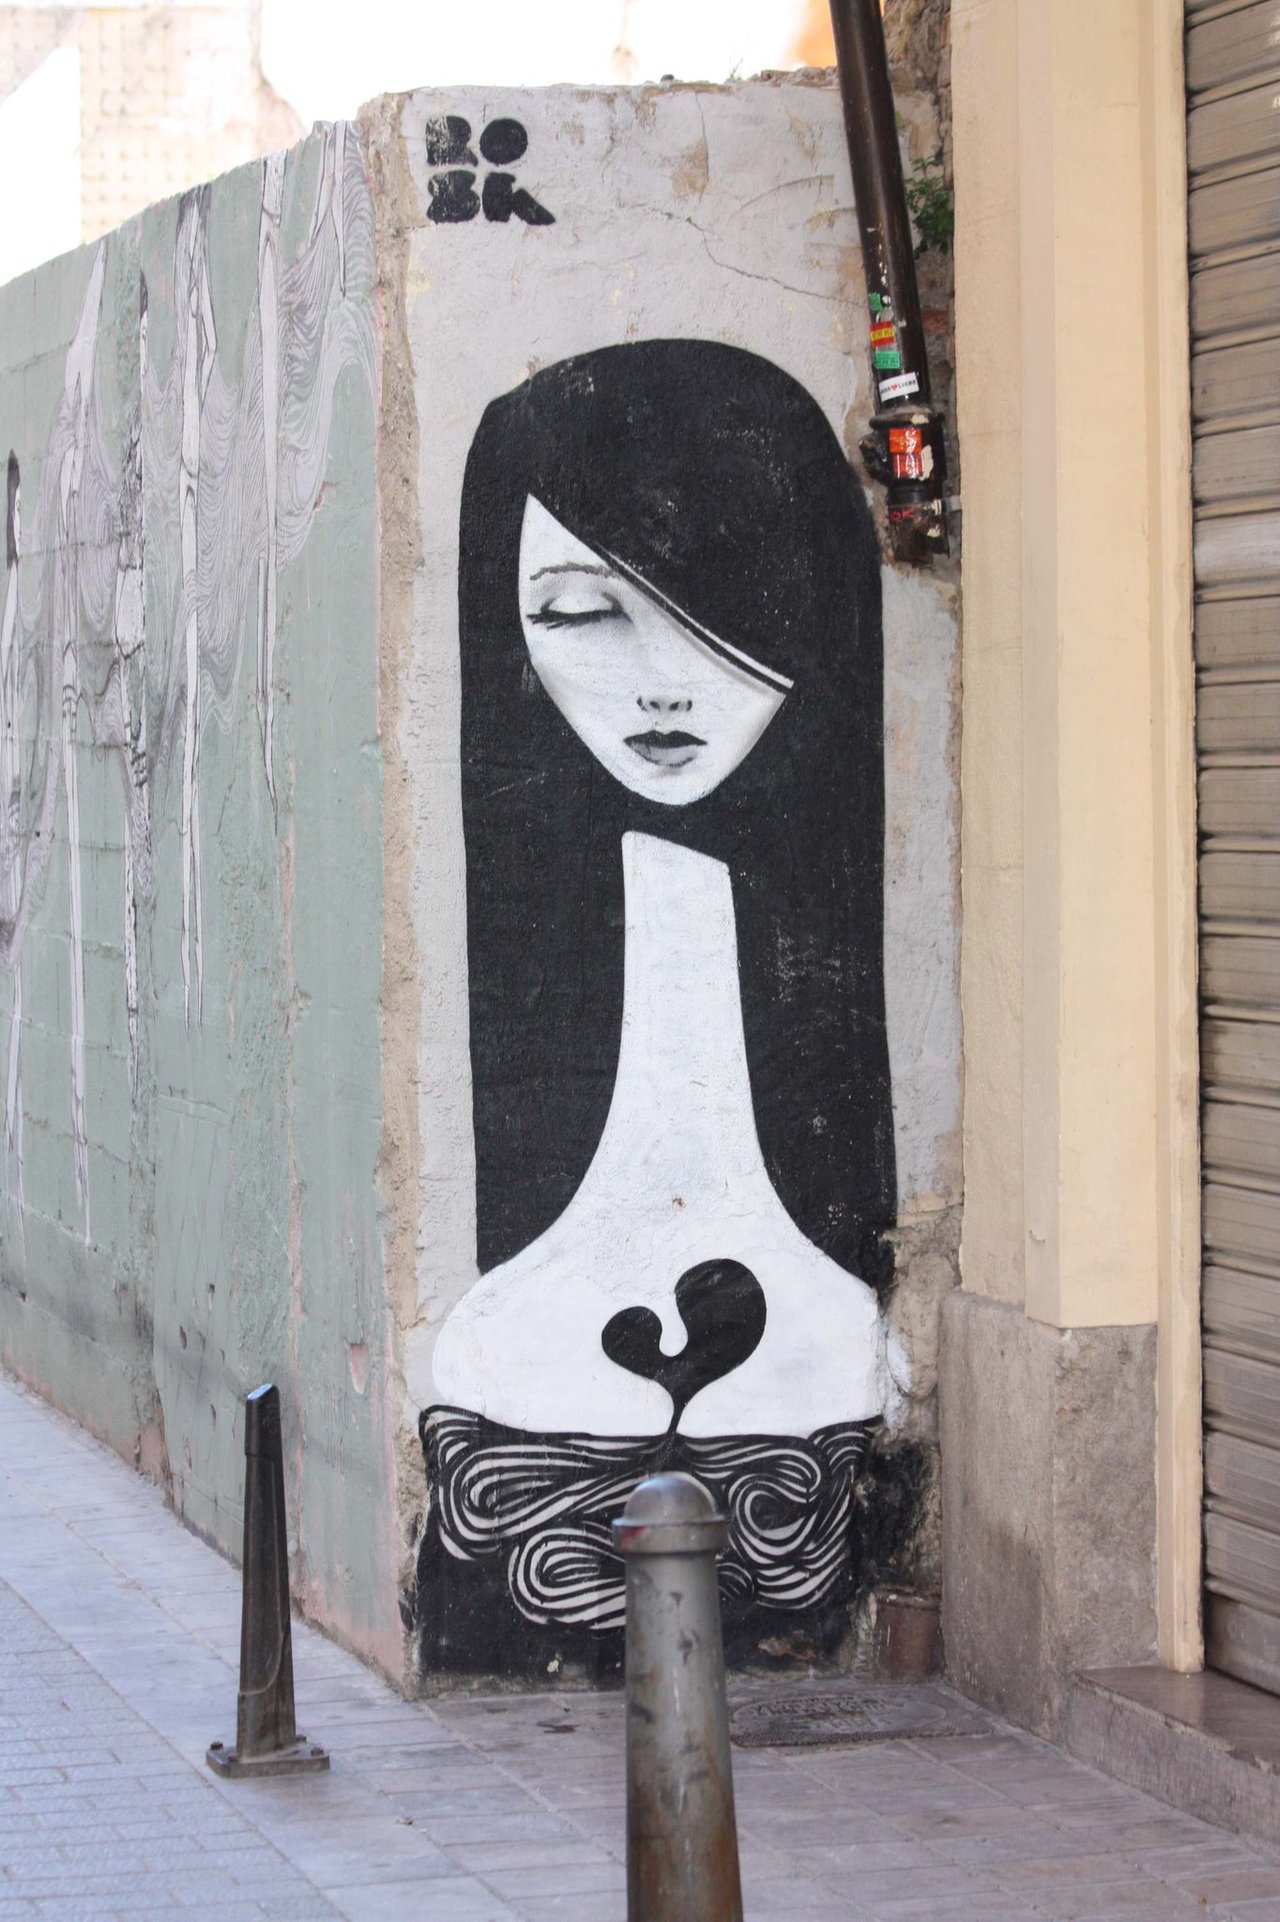 Graffity por Valencia, este en concreto me parece precioso ;)
#graffiti #streetart #arteurbano https://t.co/TzjqGAOhFa